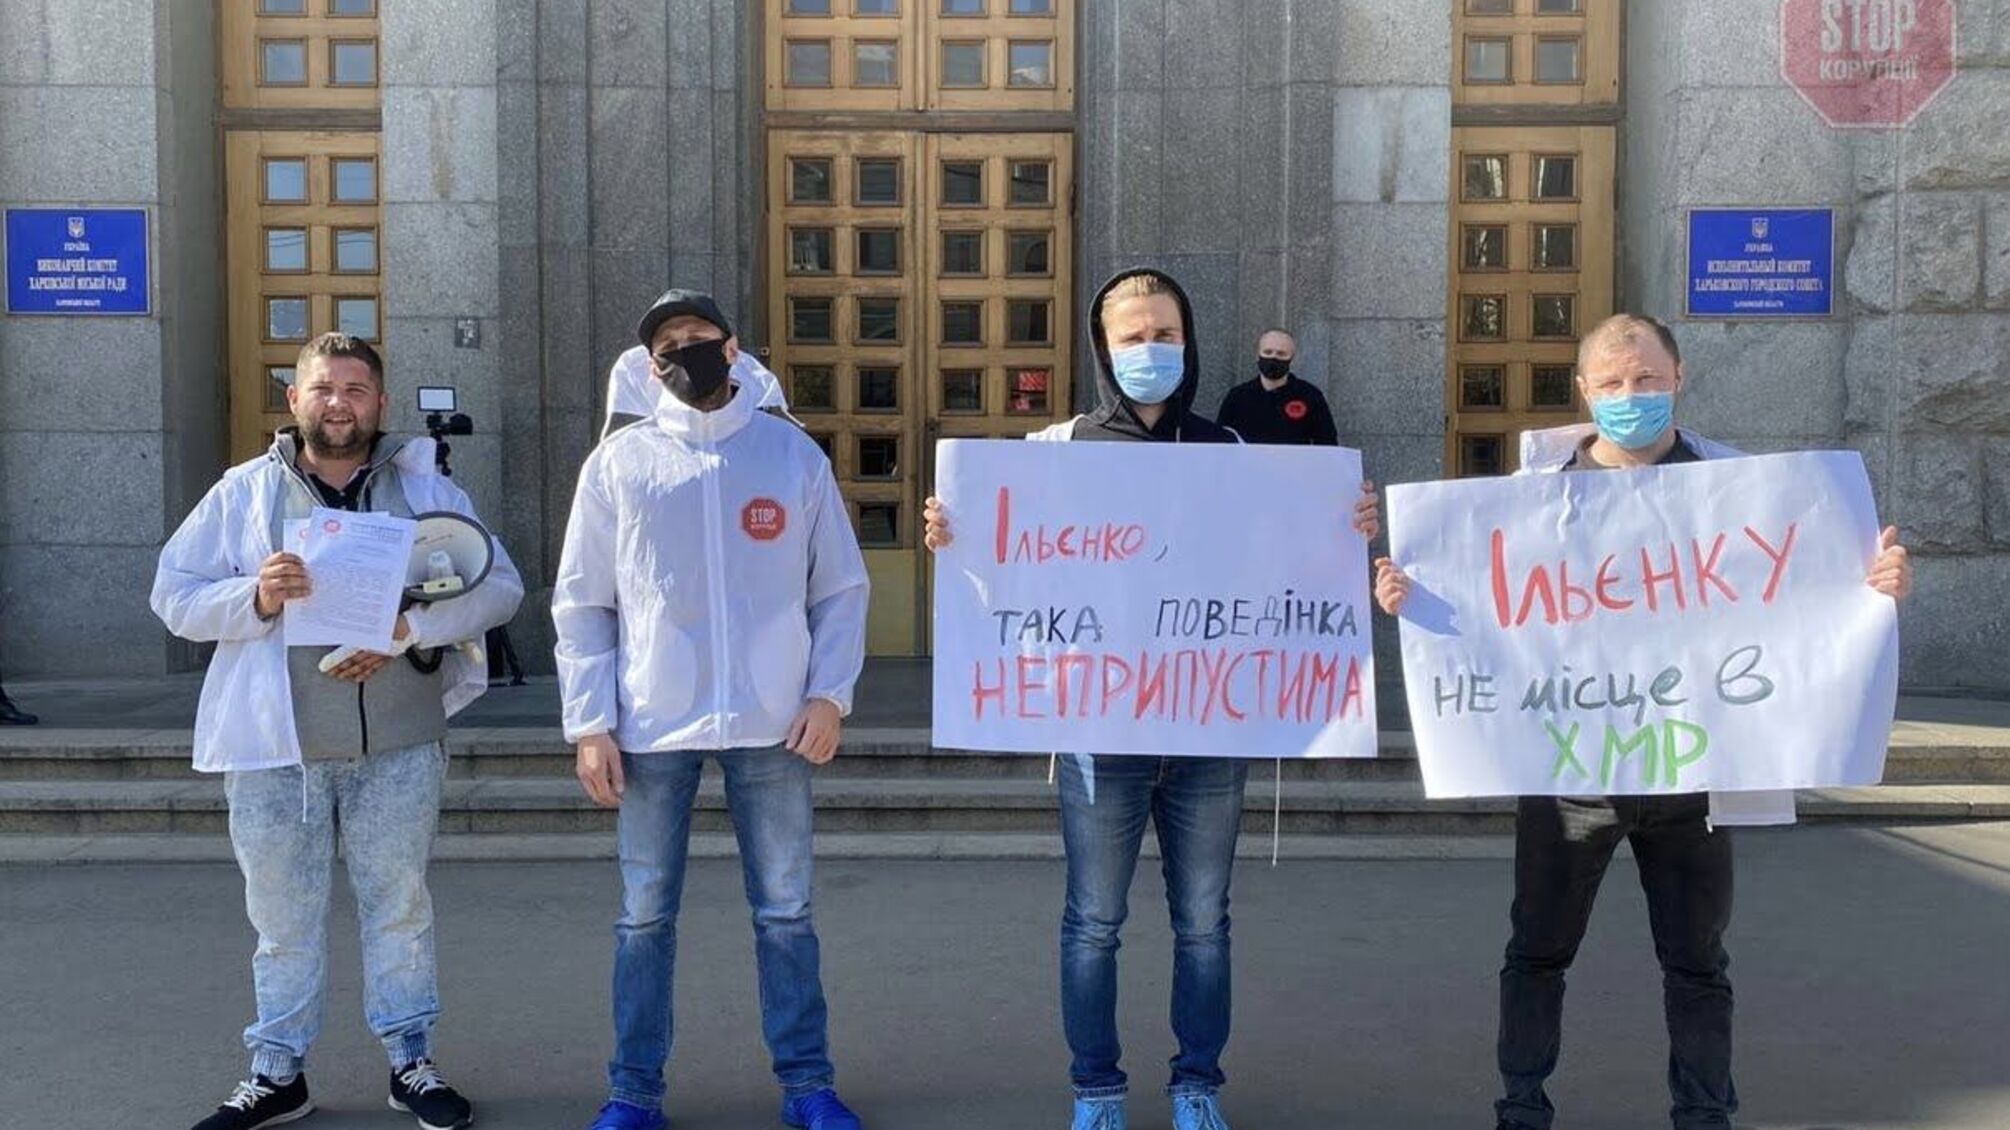 Ільєнку не місце в Харківській міськраді – активісти